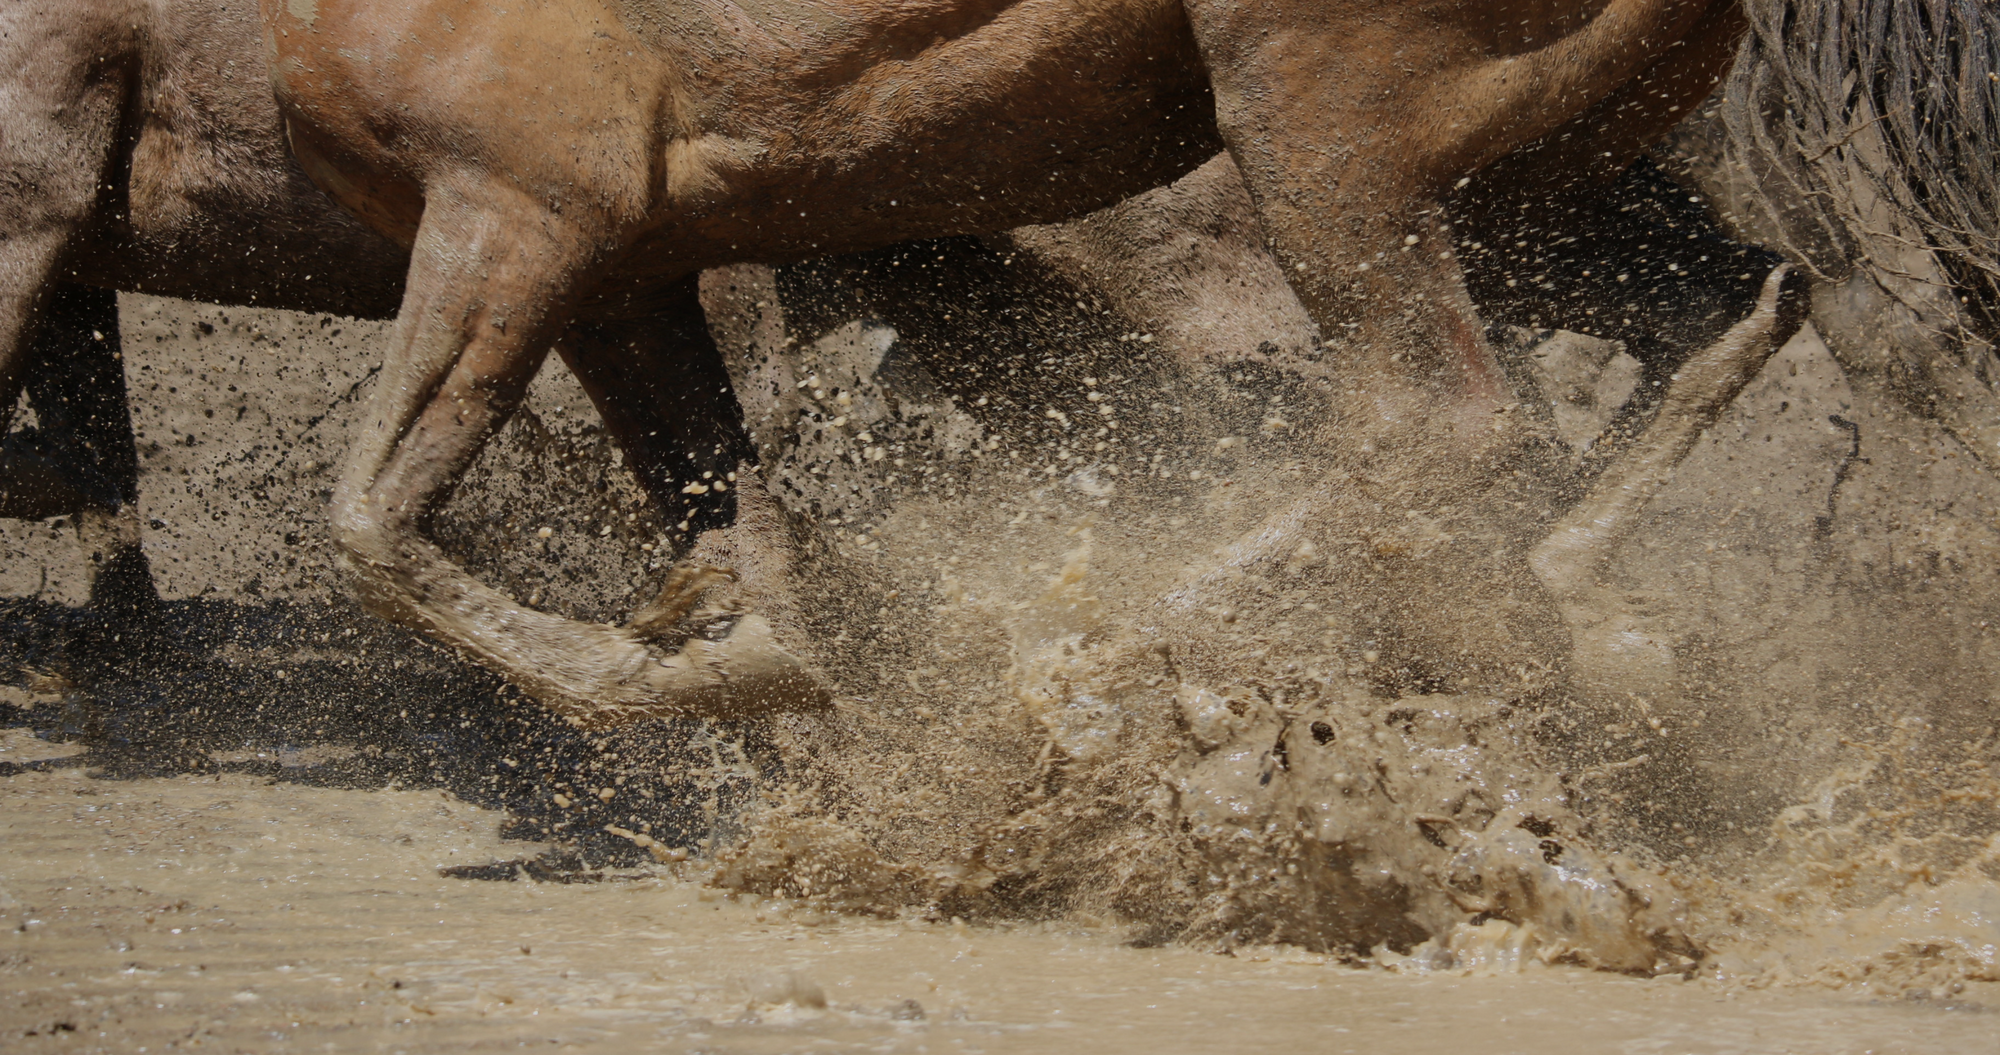 herd of horses running through mud. Mud fever in horses